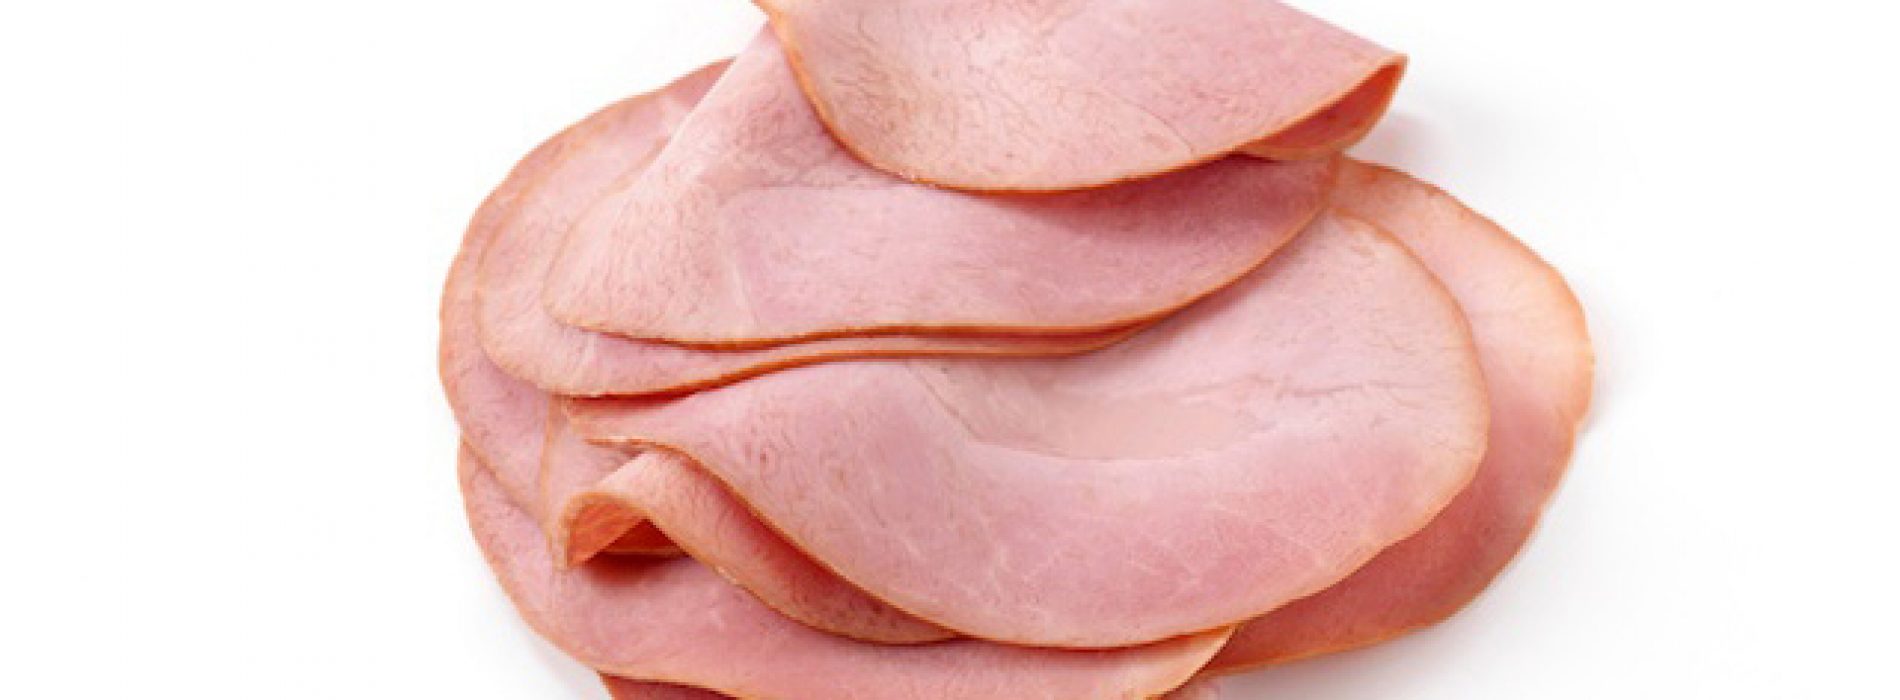 Autoriteiten weten al ruim 40 jaar dat bewerkt vlees kanker veroorzaakt, maar houden vleesindustrie hand boven hoofd